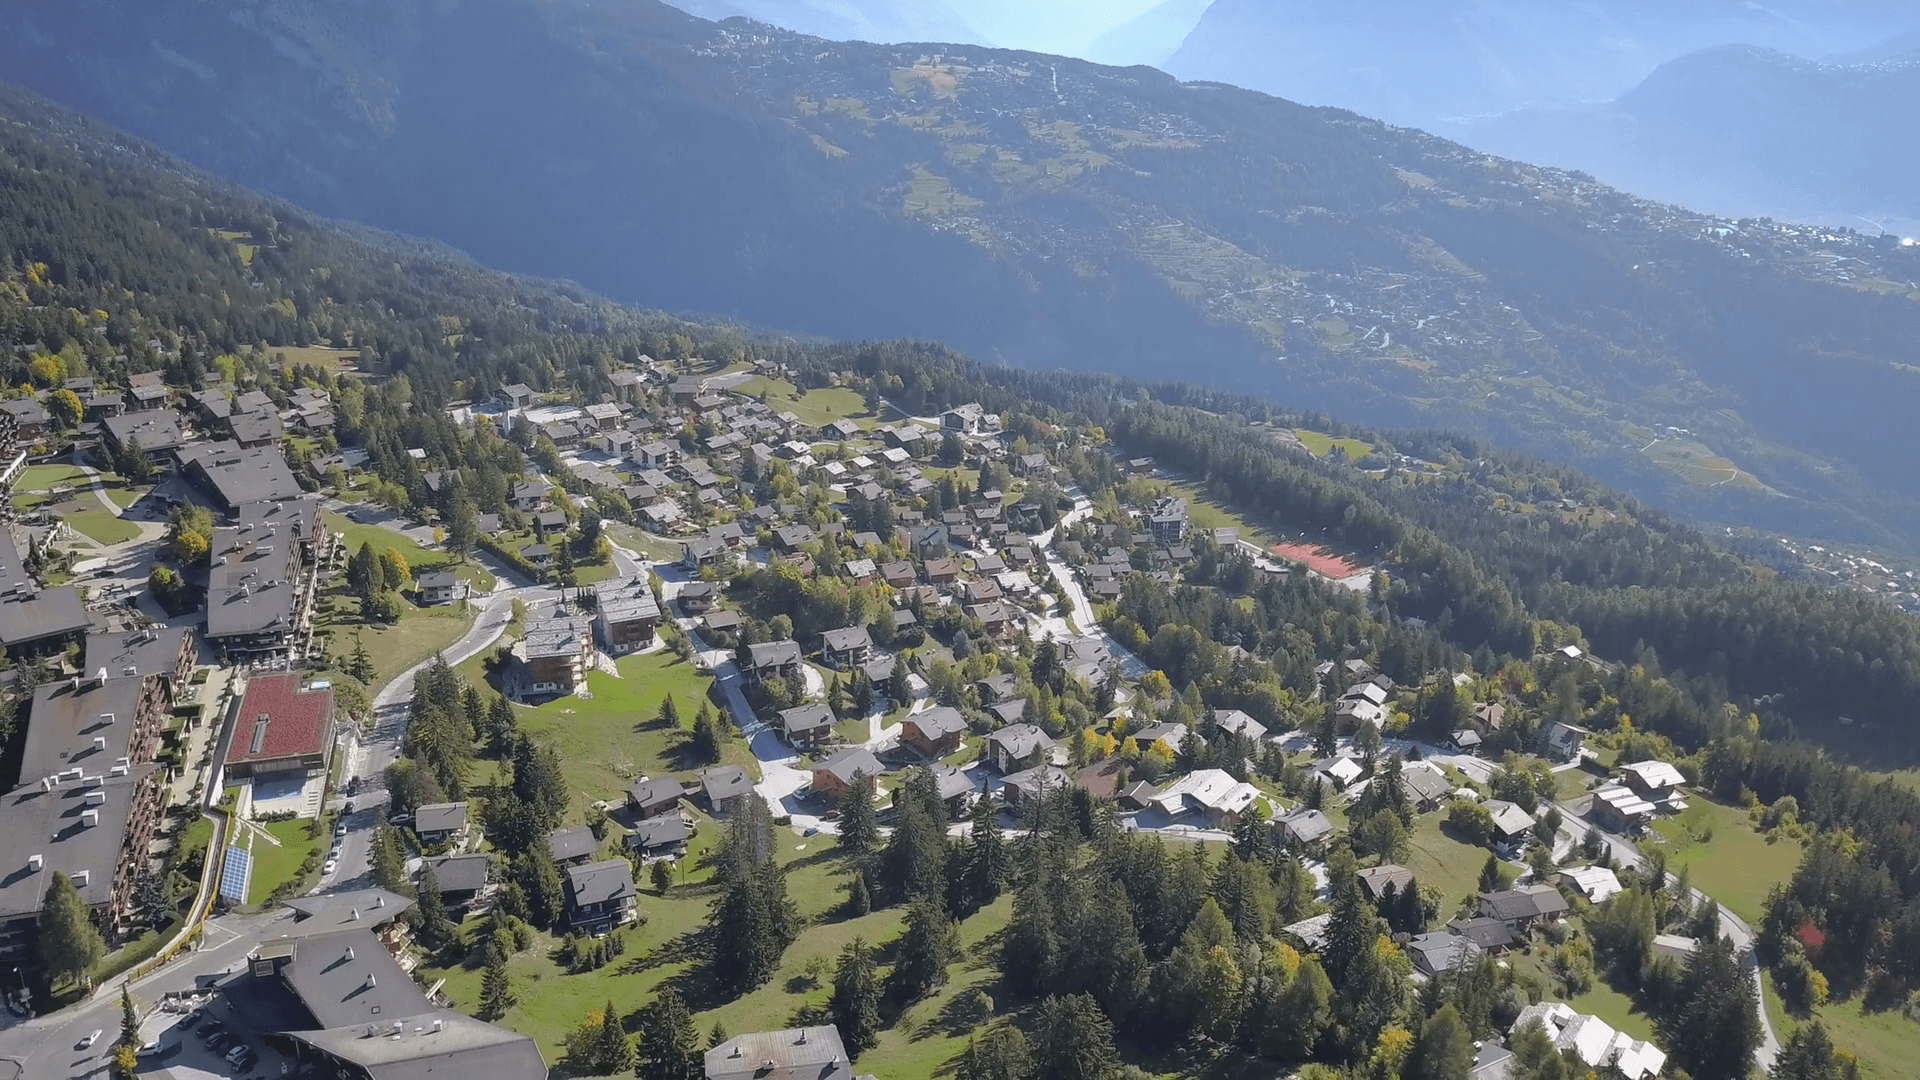 Anzere mountain resort Switzerland. Cinematic aerial shot, little